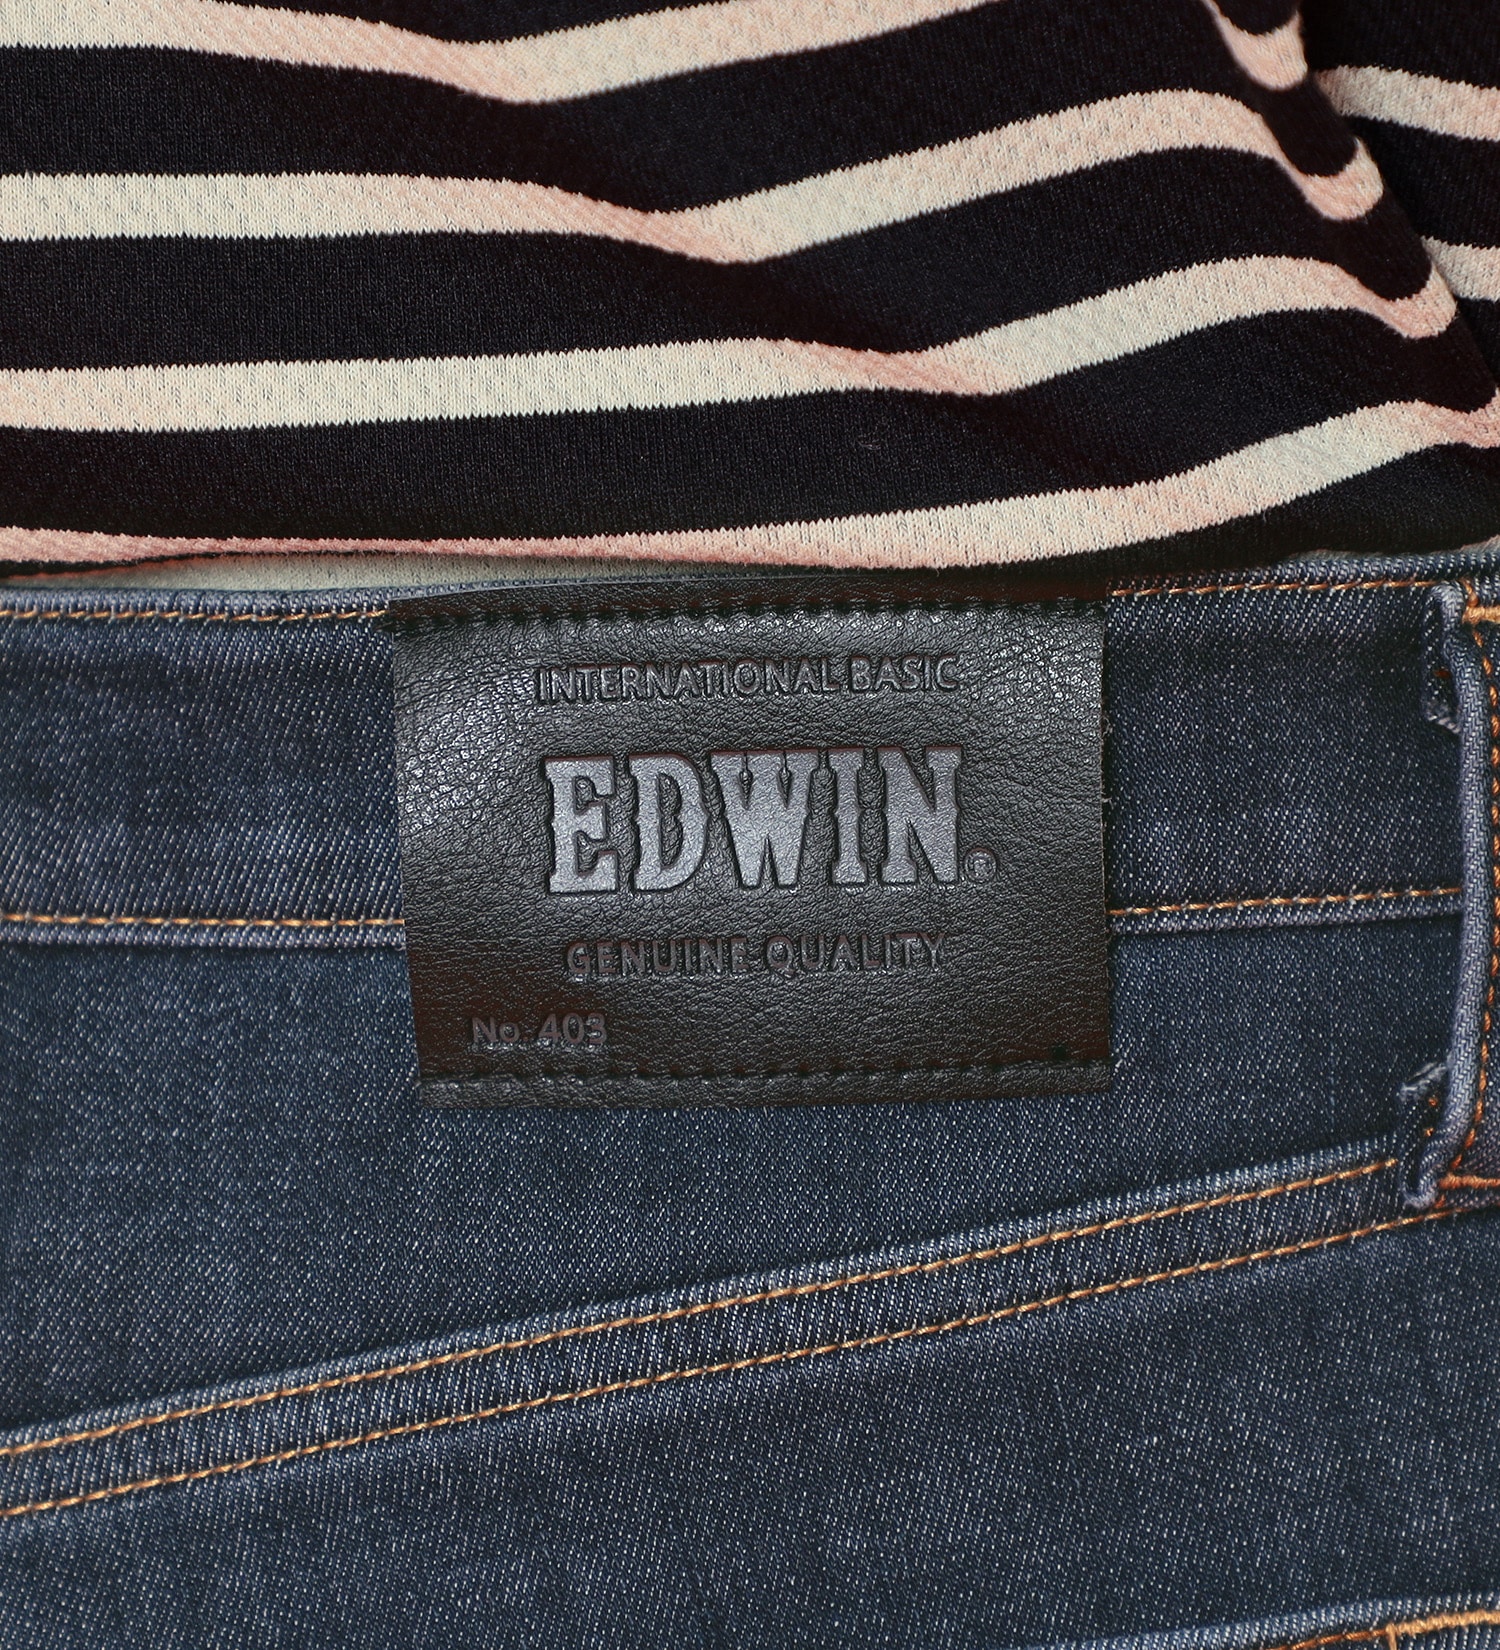 EDWIN(エドウイン)の【先行SALE】2層で暖かい EDWIN インターナショナルベーシック レギュラーストレートパンツ403 WILD FIRE 2層ボンディング構造 【暖】|パンツ/パンツ/メンズ|濃色ブルー